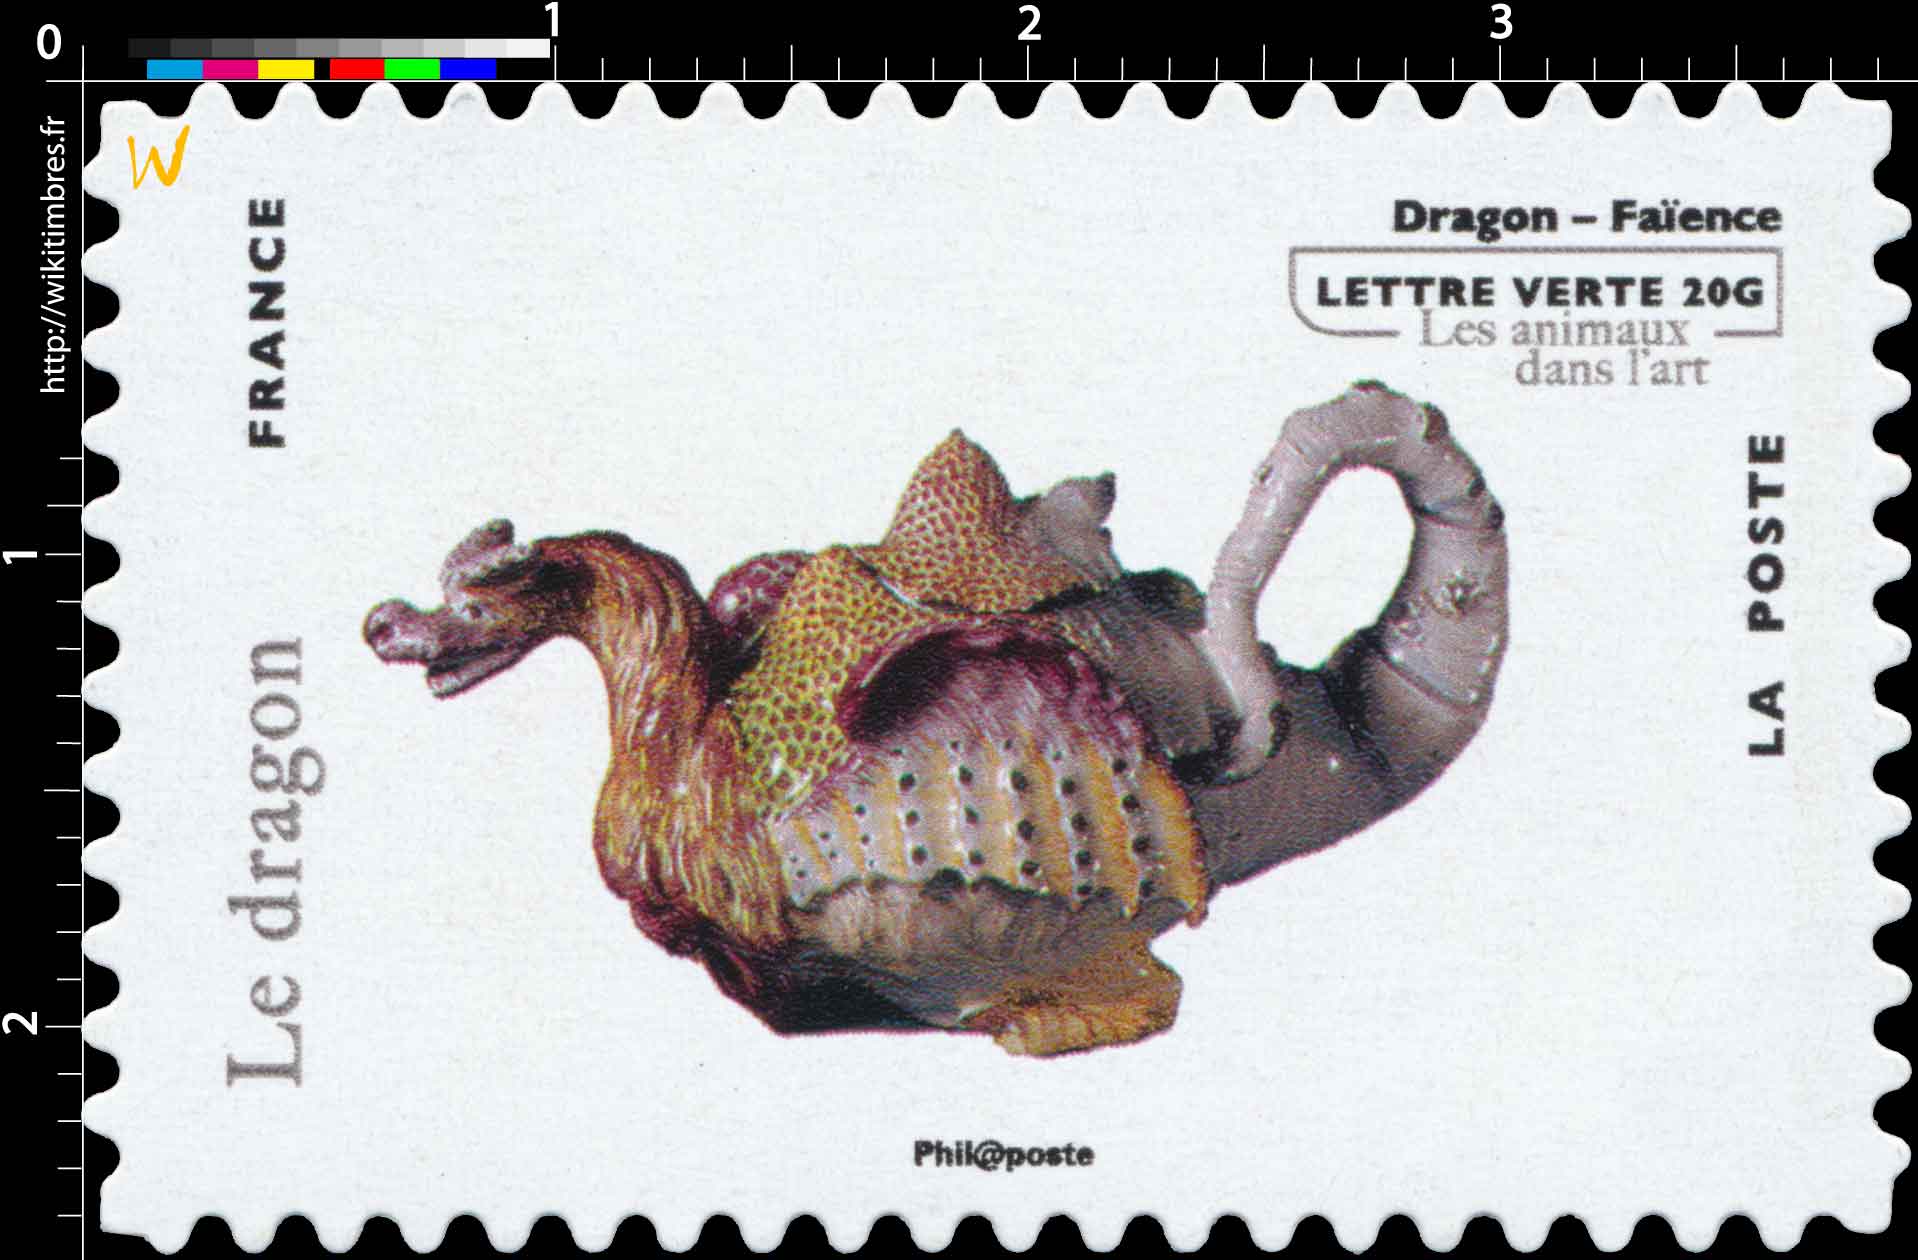 Le dragon - Dragon - Faïence -  Les animaux dans l'art